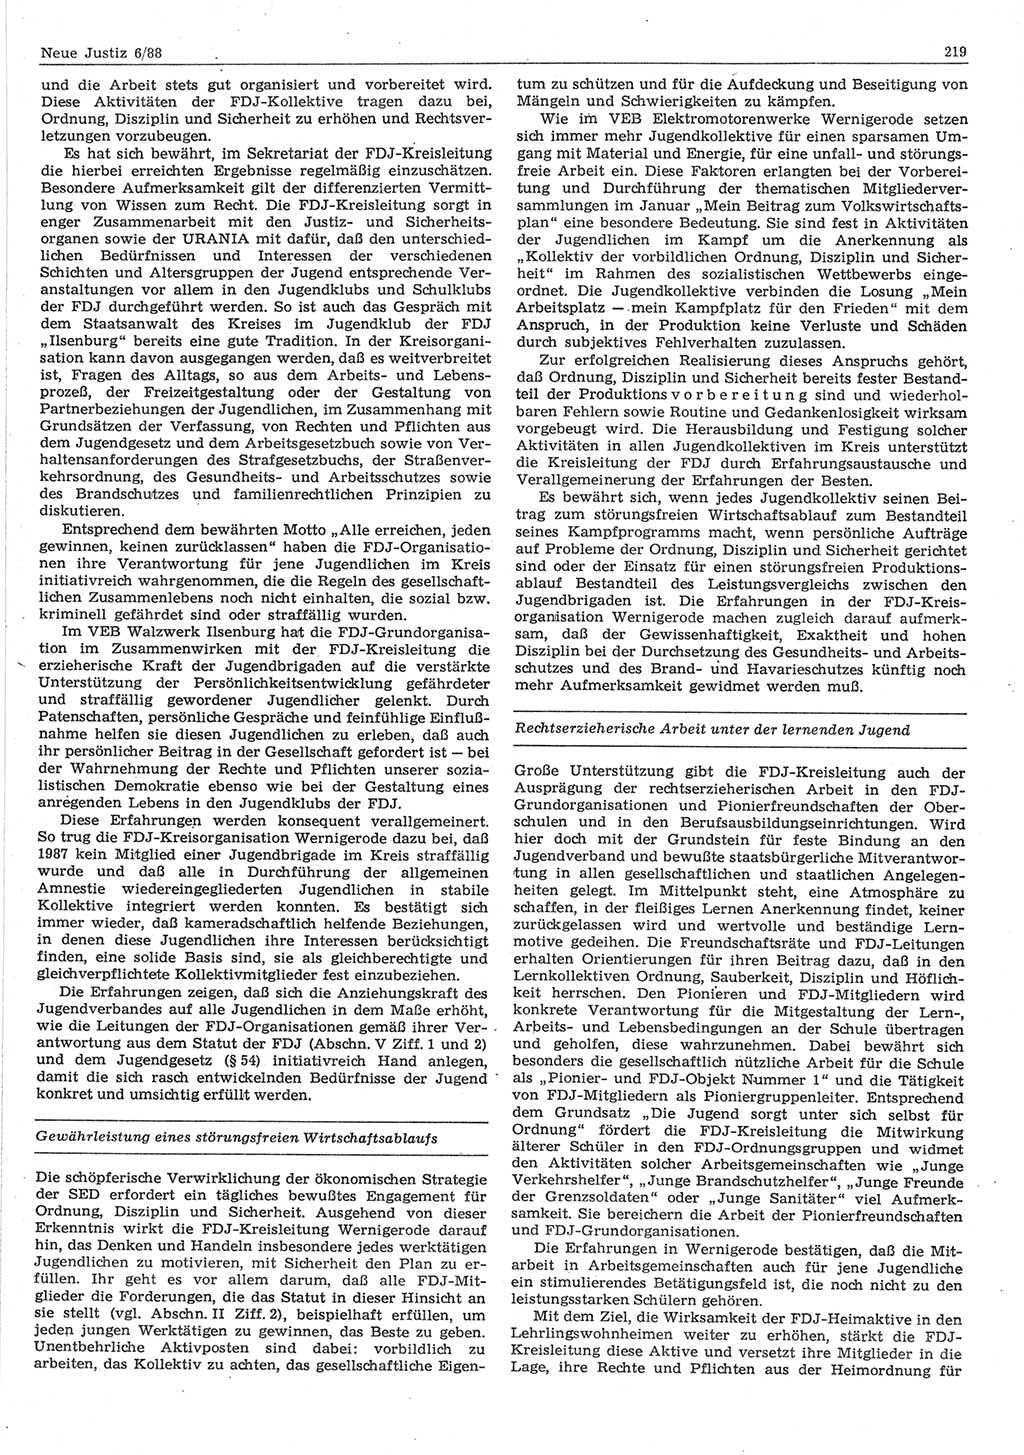 Neue Justiz (NJ), Zeitschrift für sozialistisches Recht und Gesetzlichkeit [Deutsche Demokratische Republik (DDR)], 42. Jahrgang 1988, Seite 219 (NJ DDR 1988, S. 219)